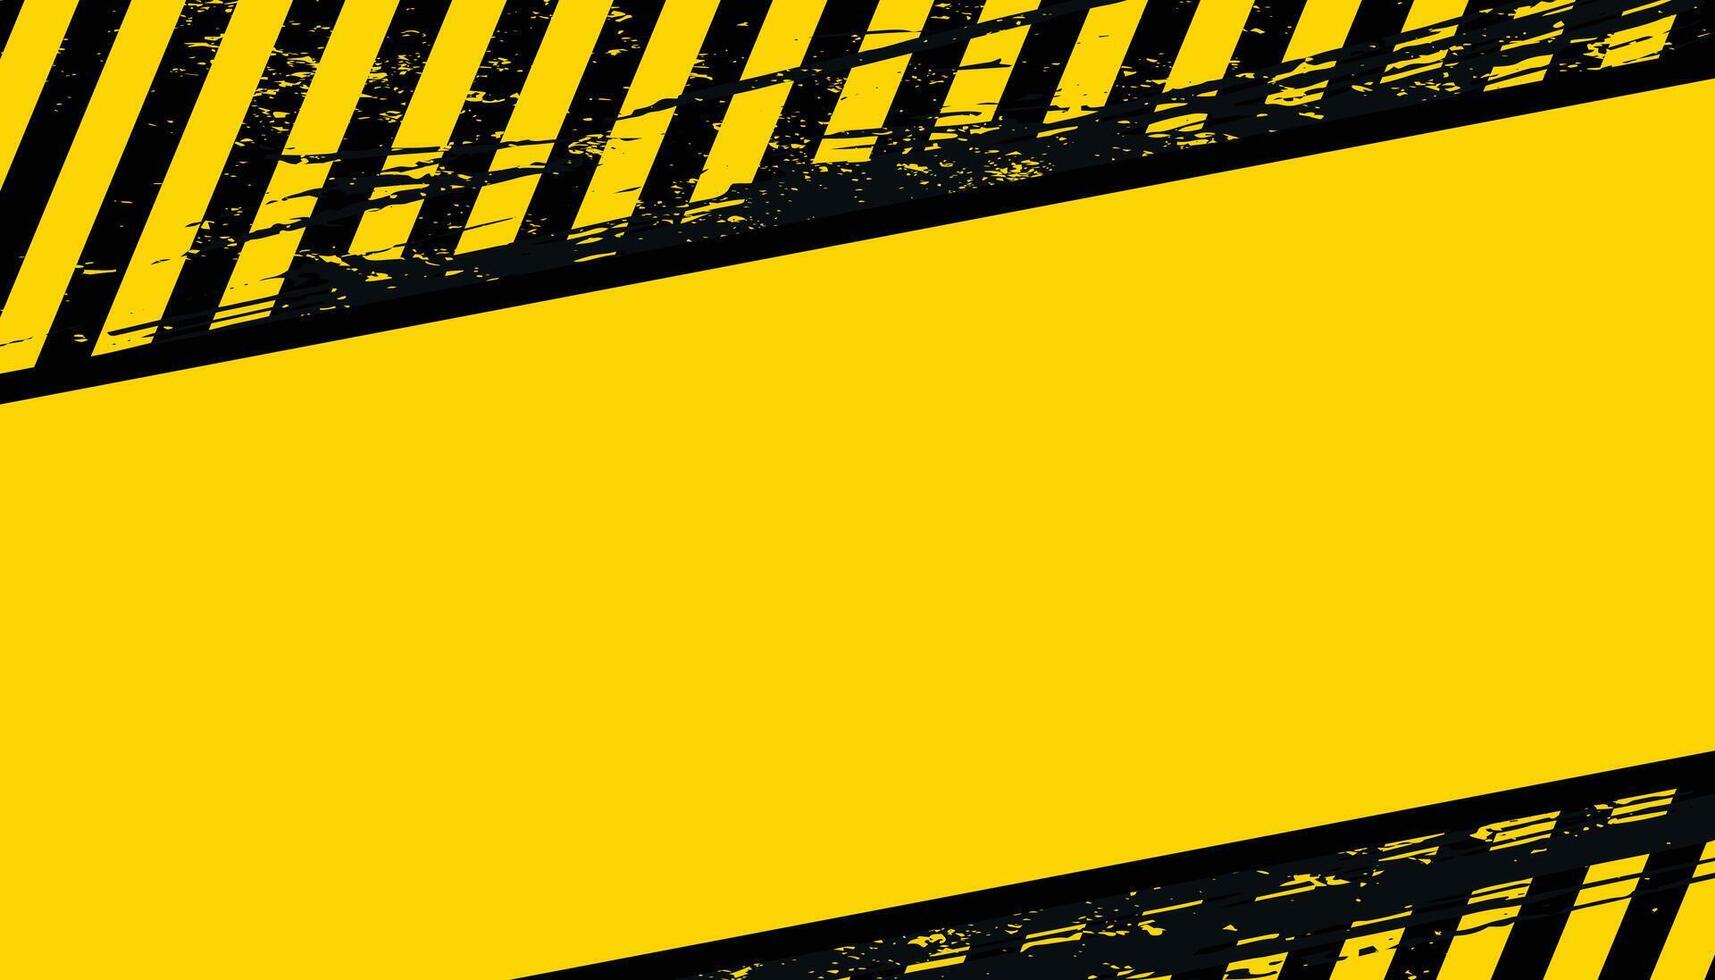 Preto e amarelo industrial Atenção bandeira com em branco espaço vetor